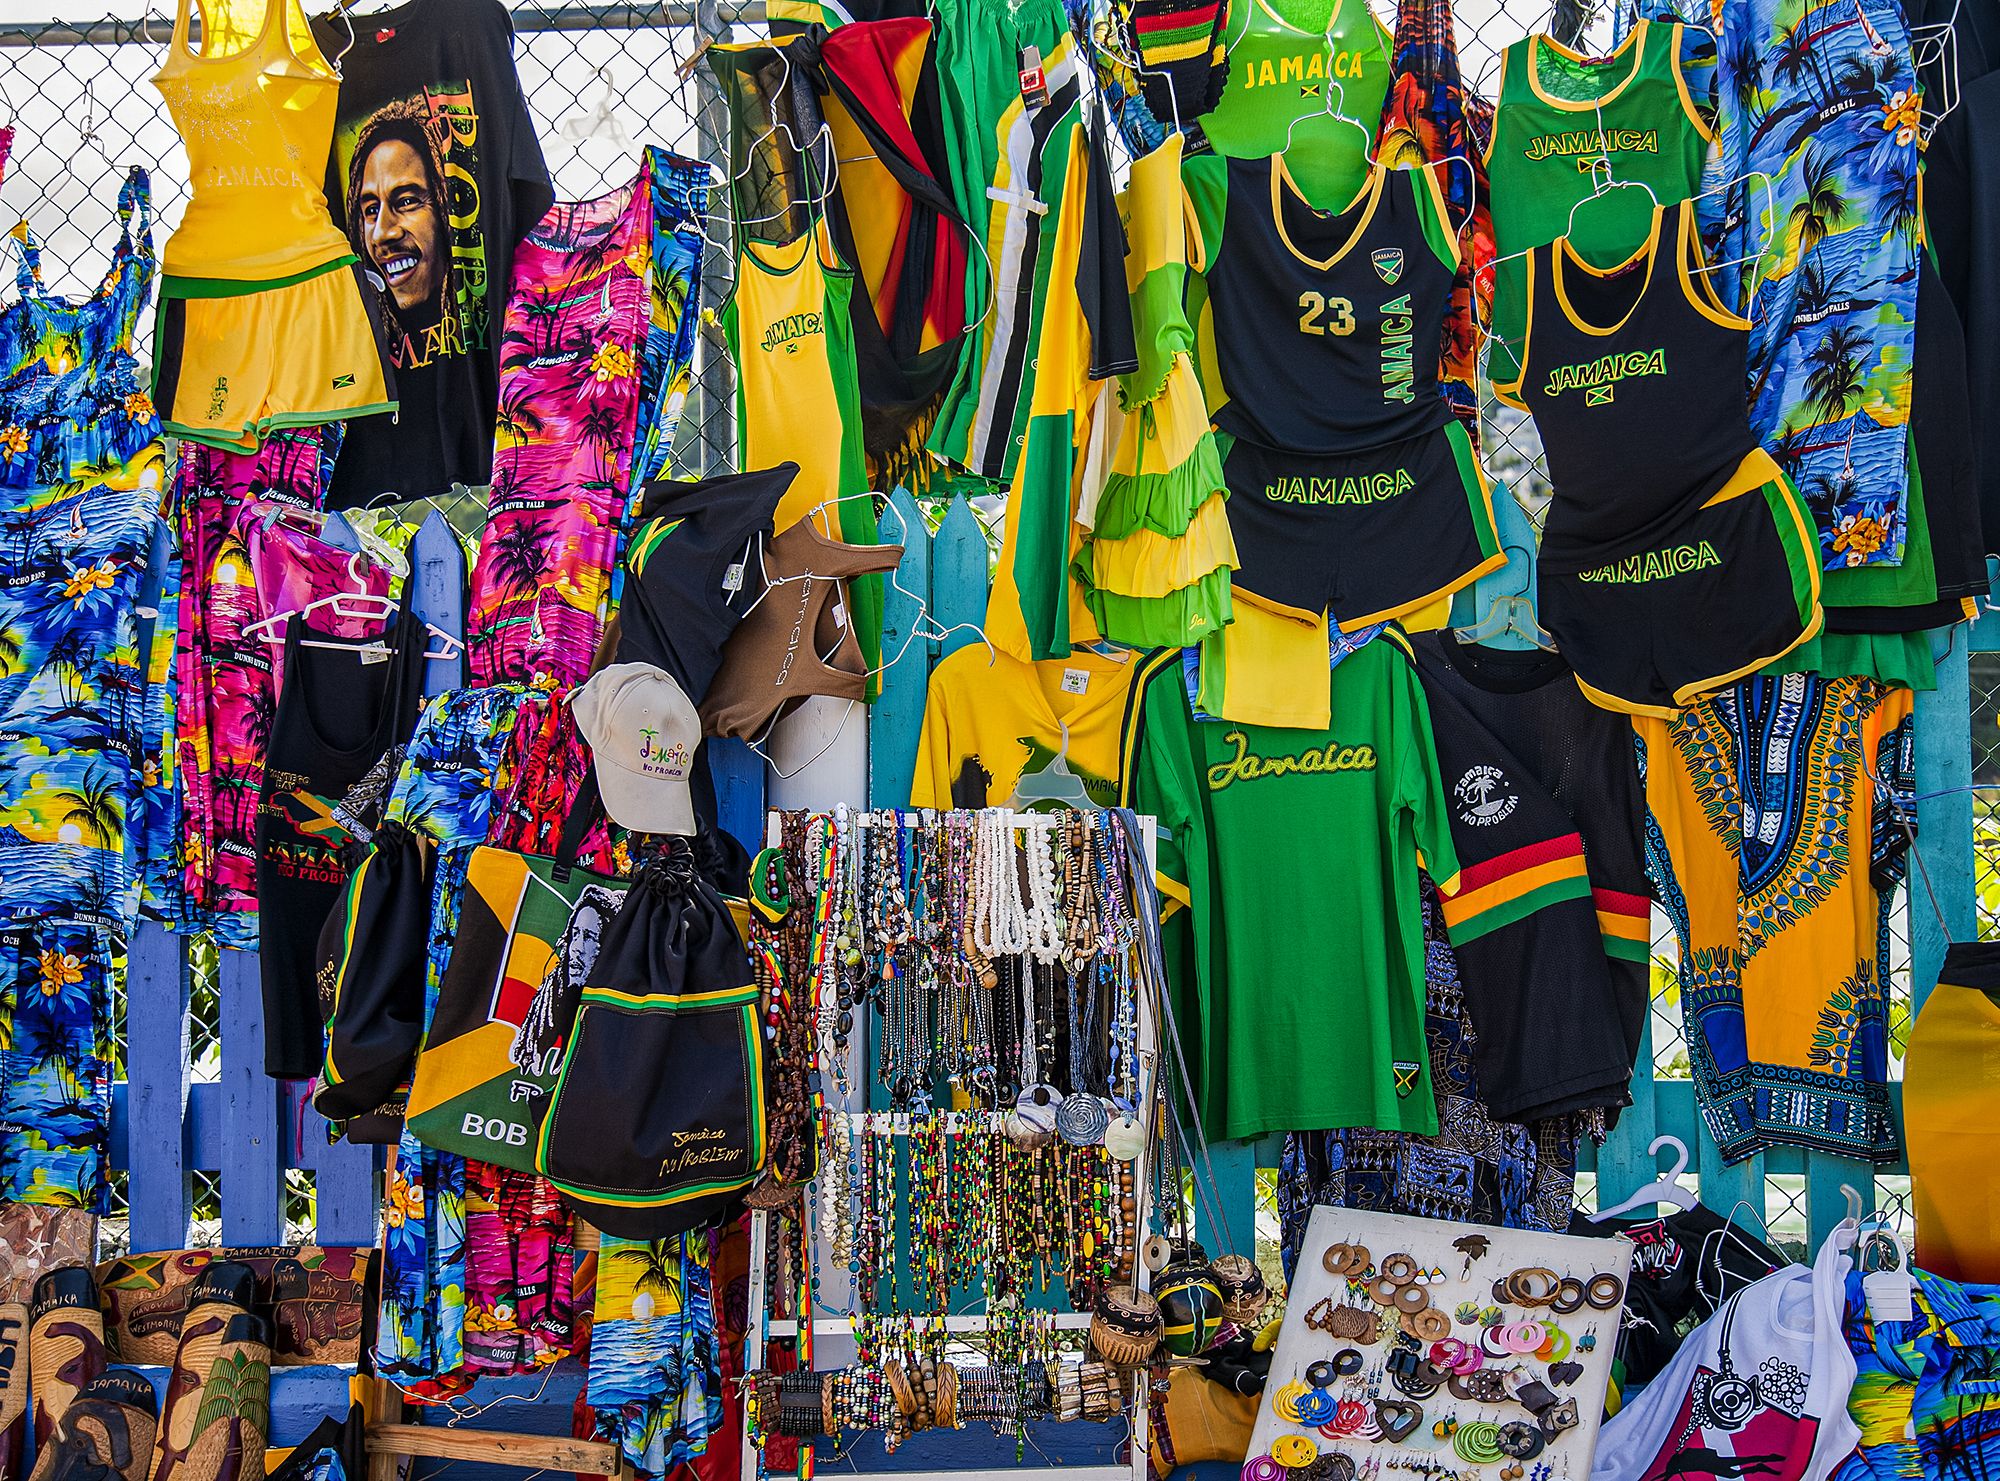 Jamaica Shopping Ocho RIos Street Vendors